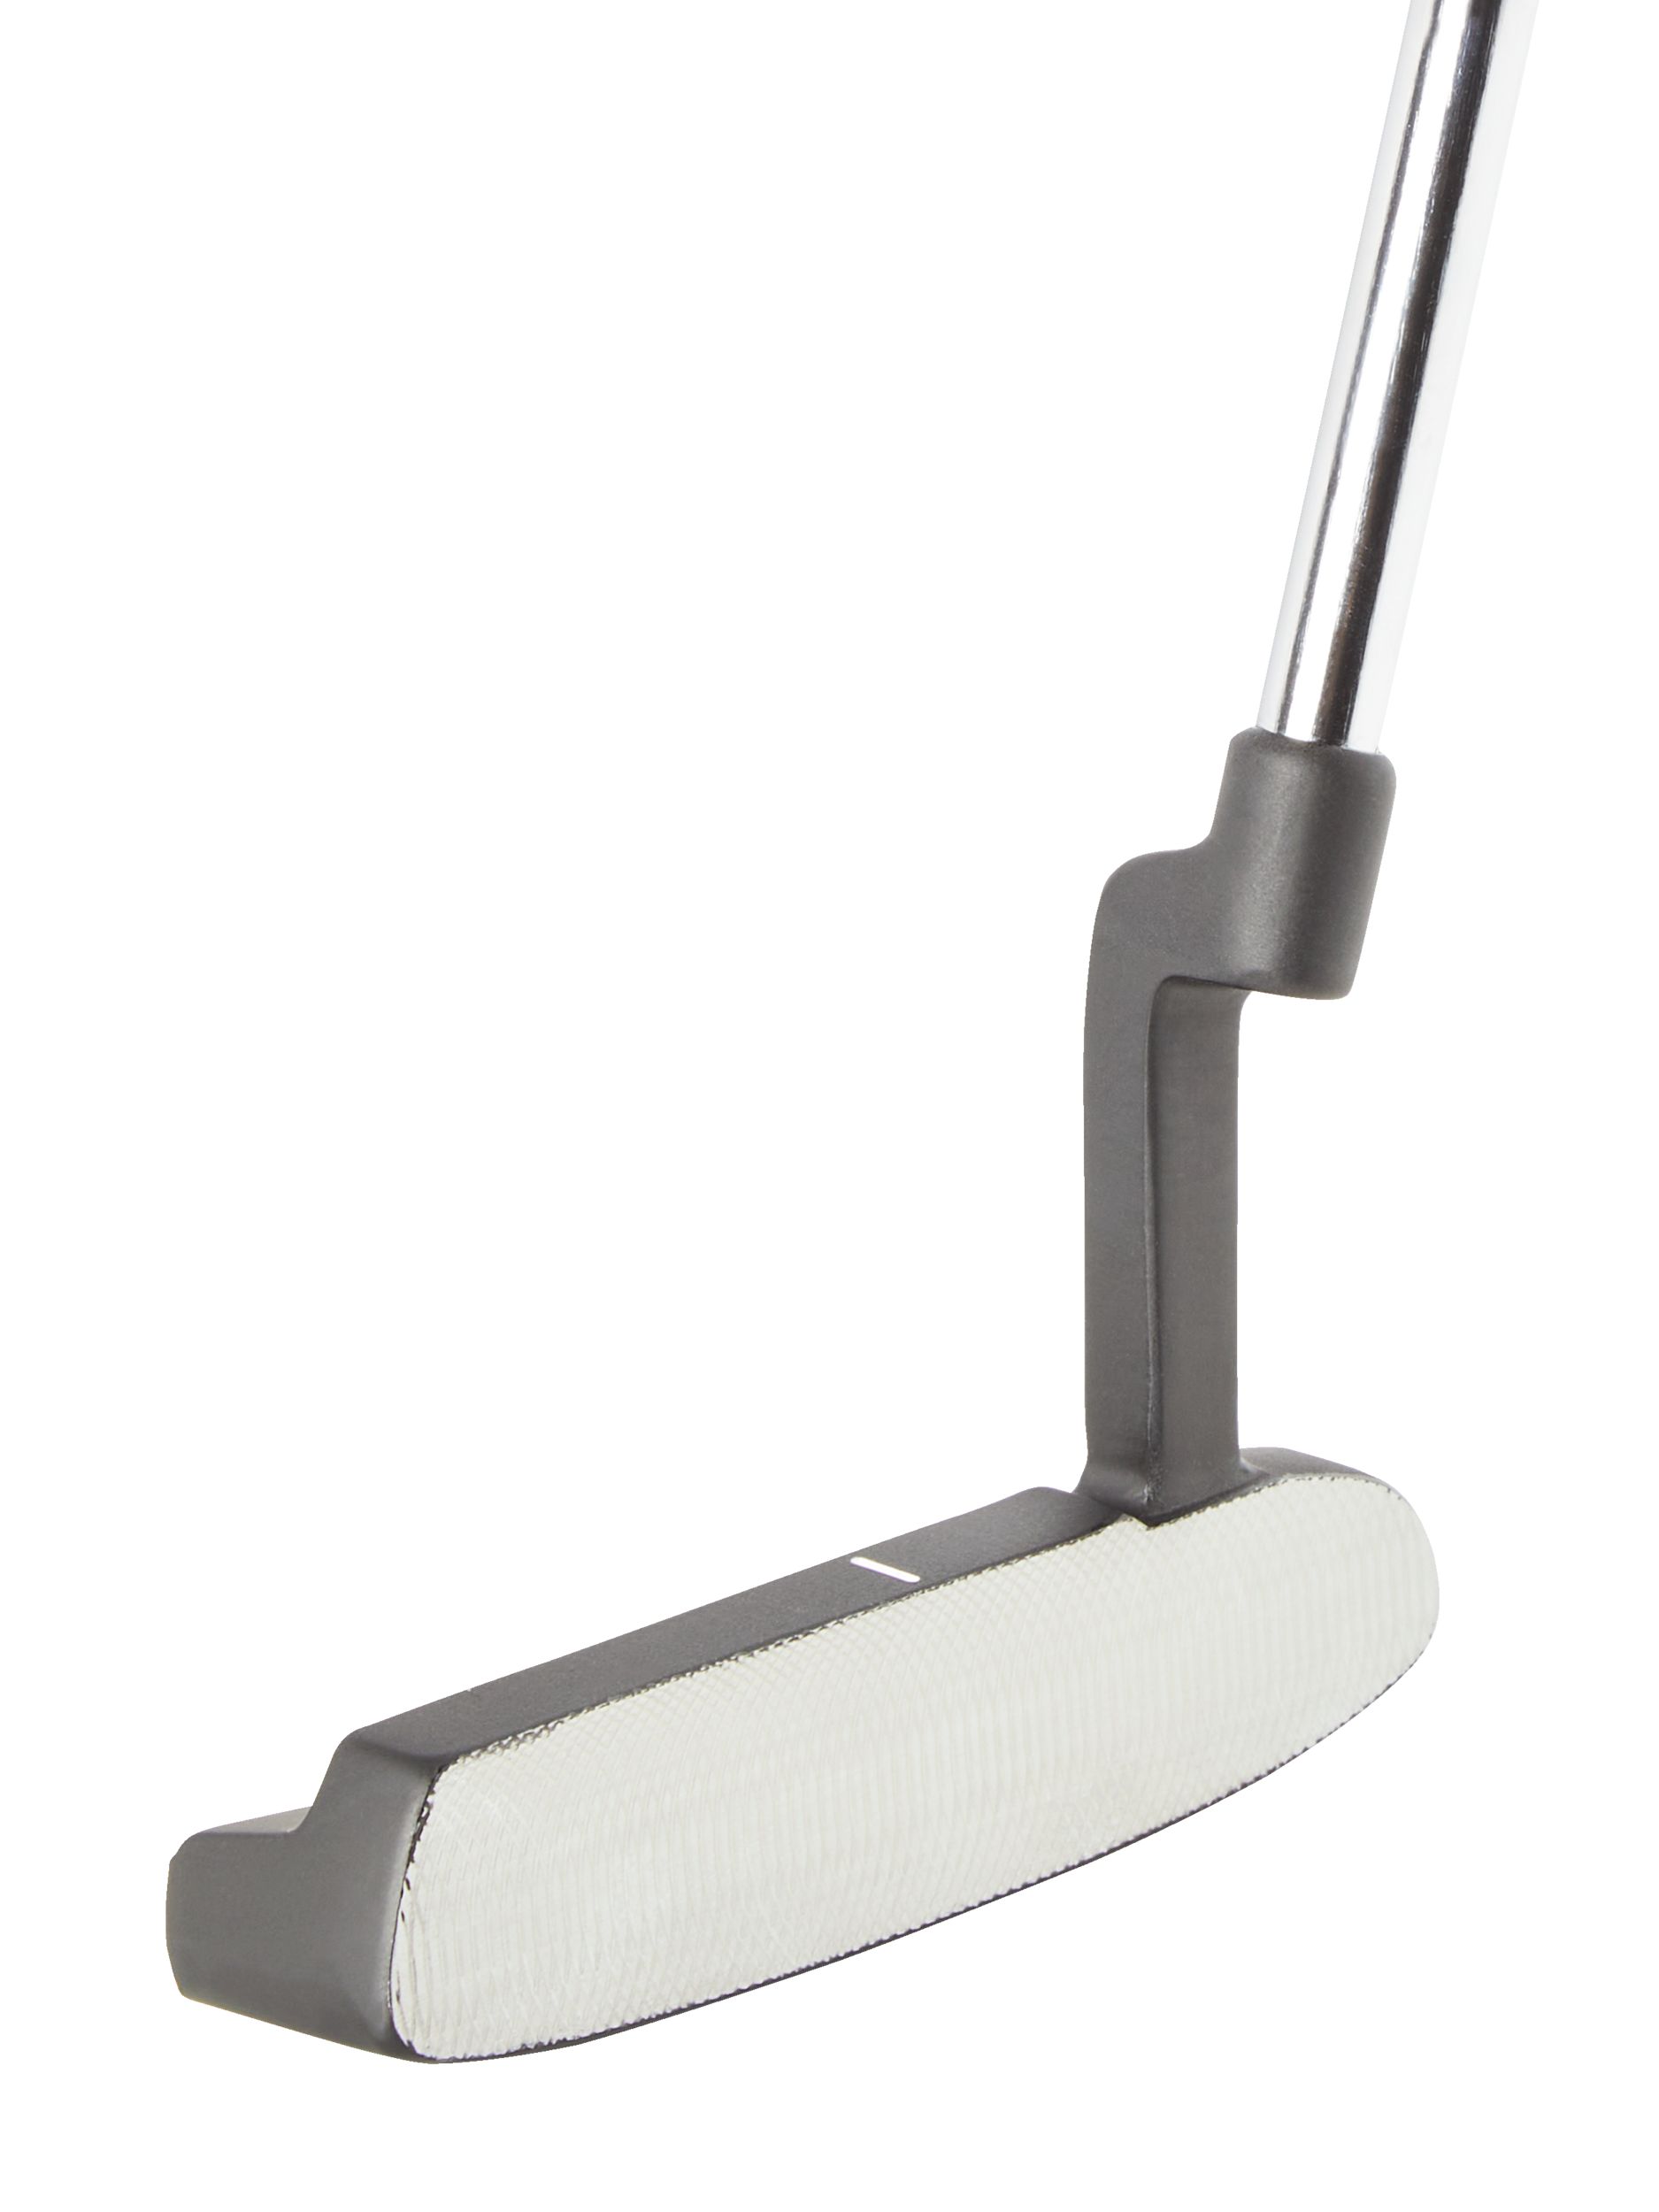 Image of Powerbilt TPX Blade Men's Golf Putter